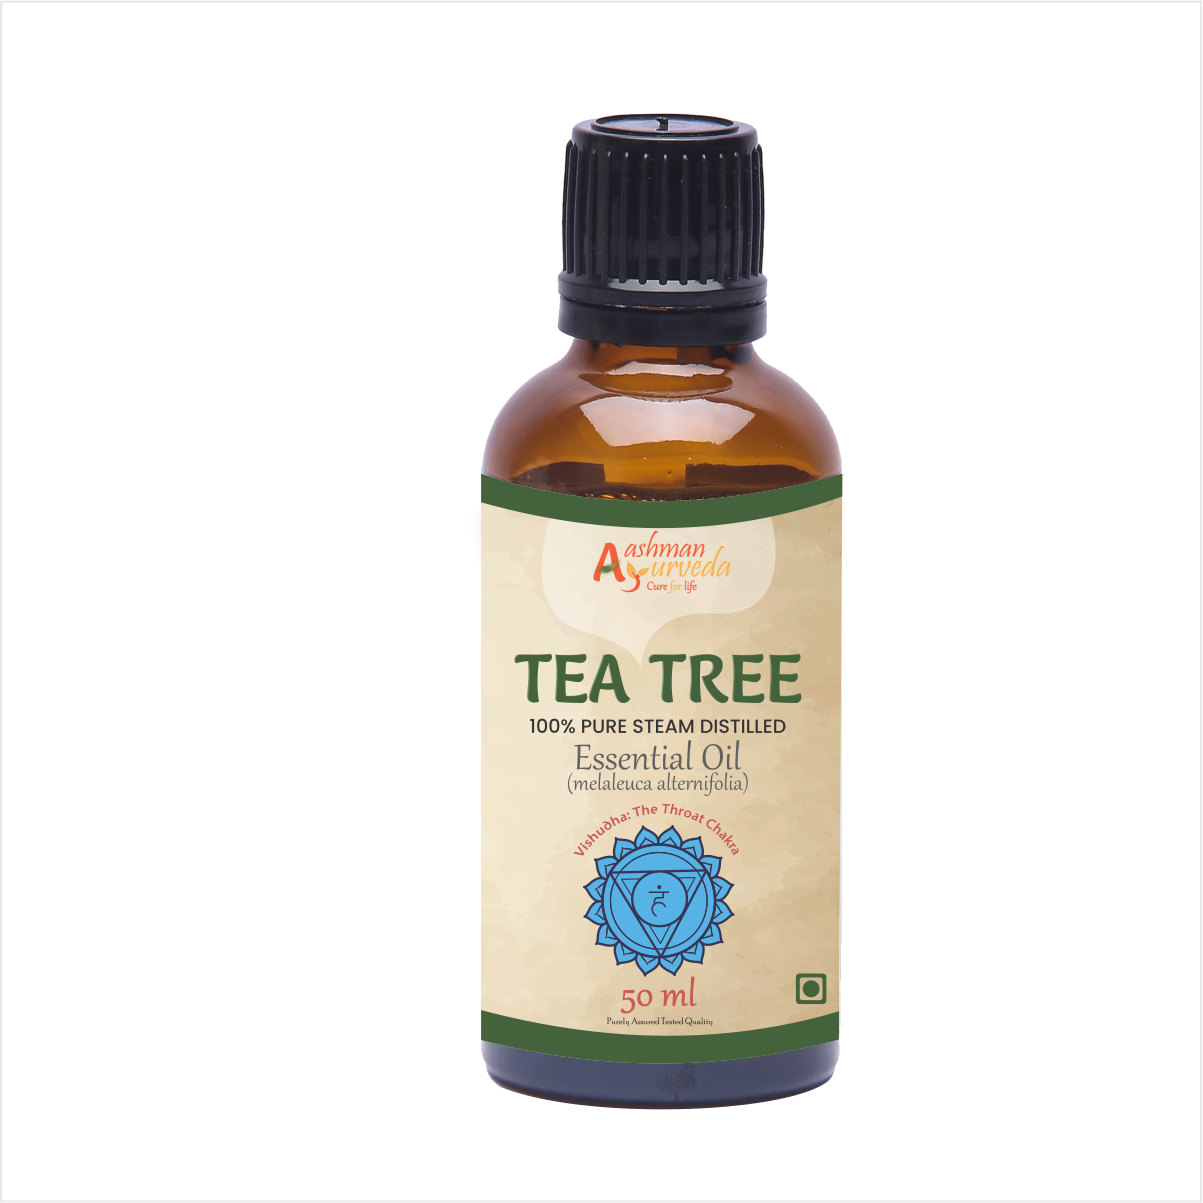 Buy Aashman Ayurveda Eseential Oil Tea Tree  50 ML at Best Price Online